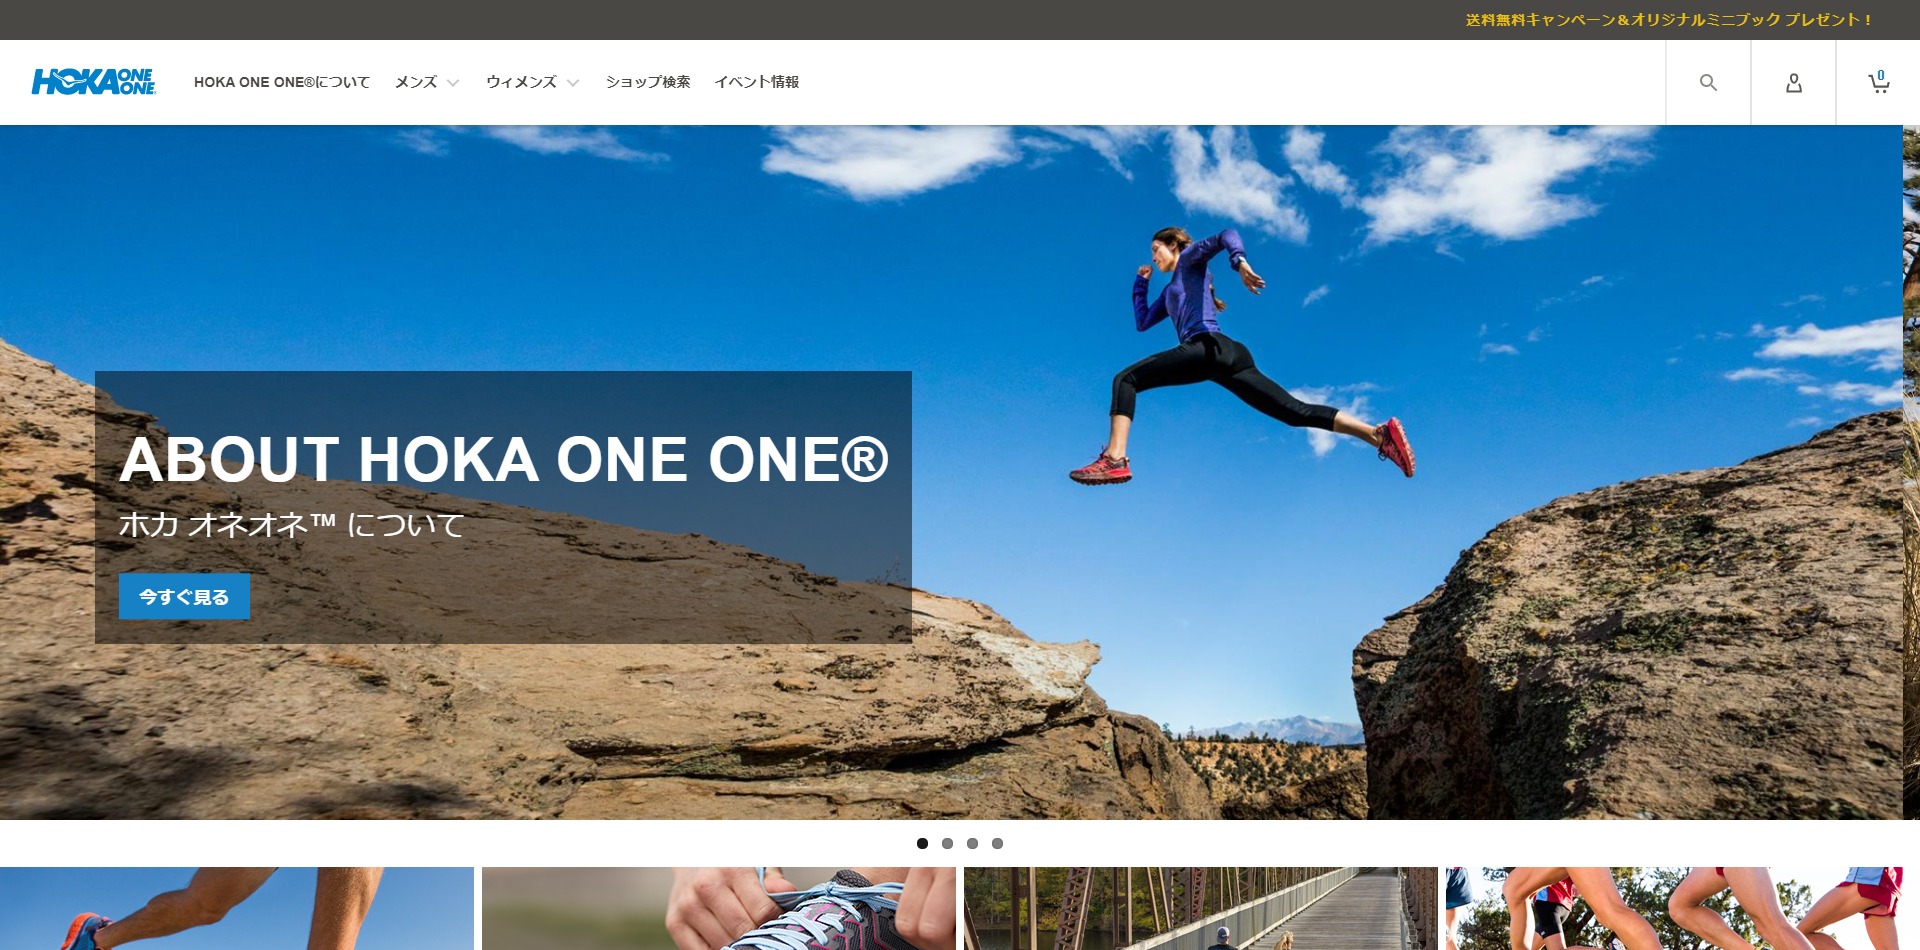 Hoka One Oneが公式サイト開設 全品送料無料 ミニブックプレゼント中 Lumina Webマガジン